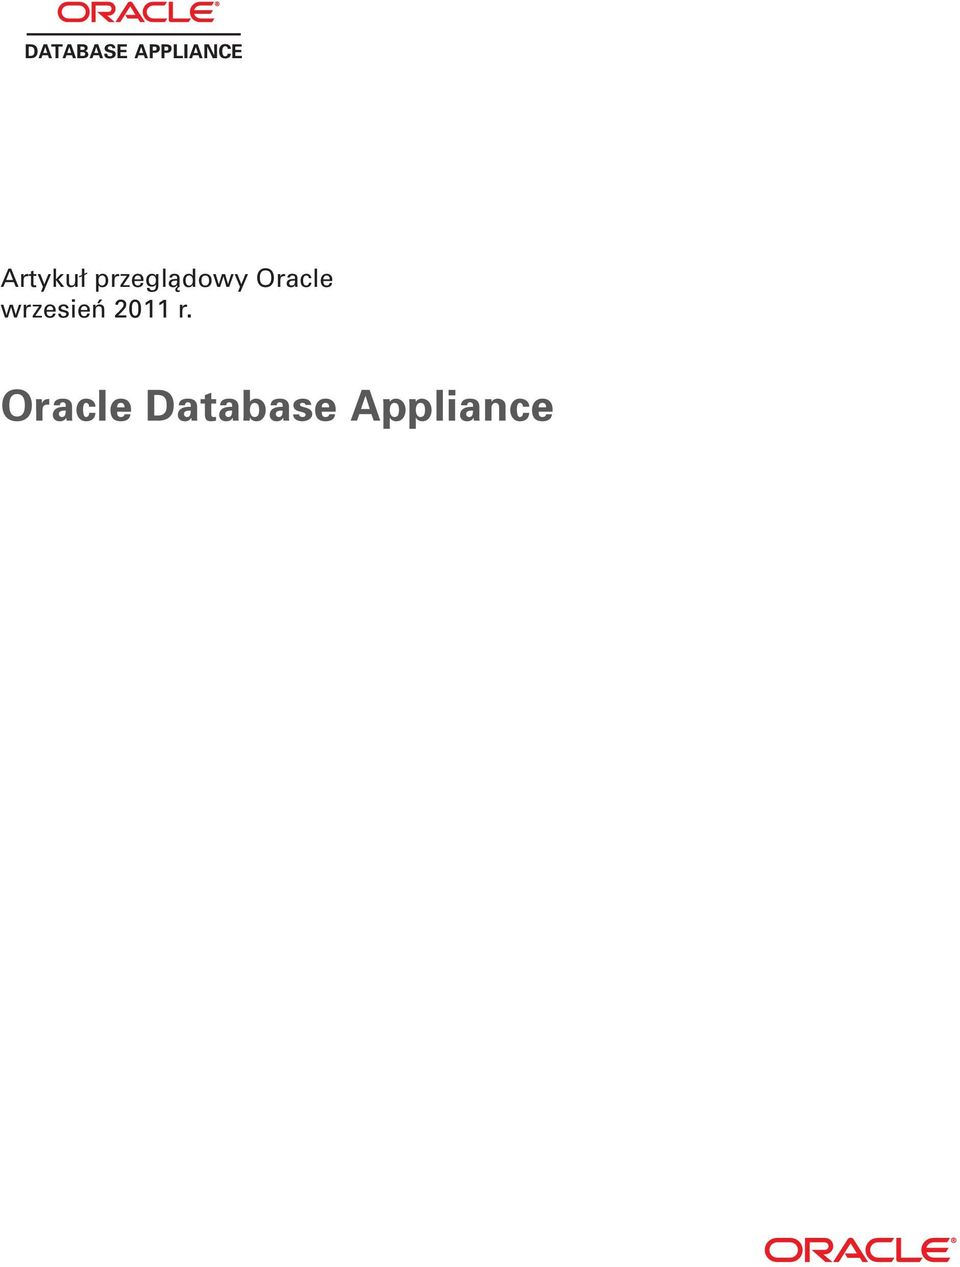 Oracle wrzesień 2011